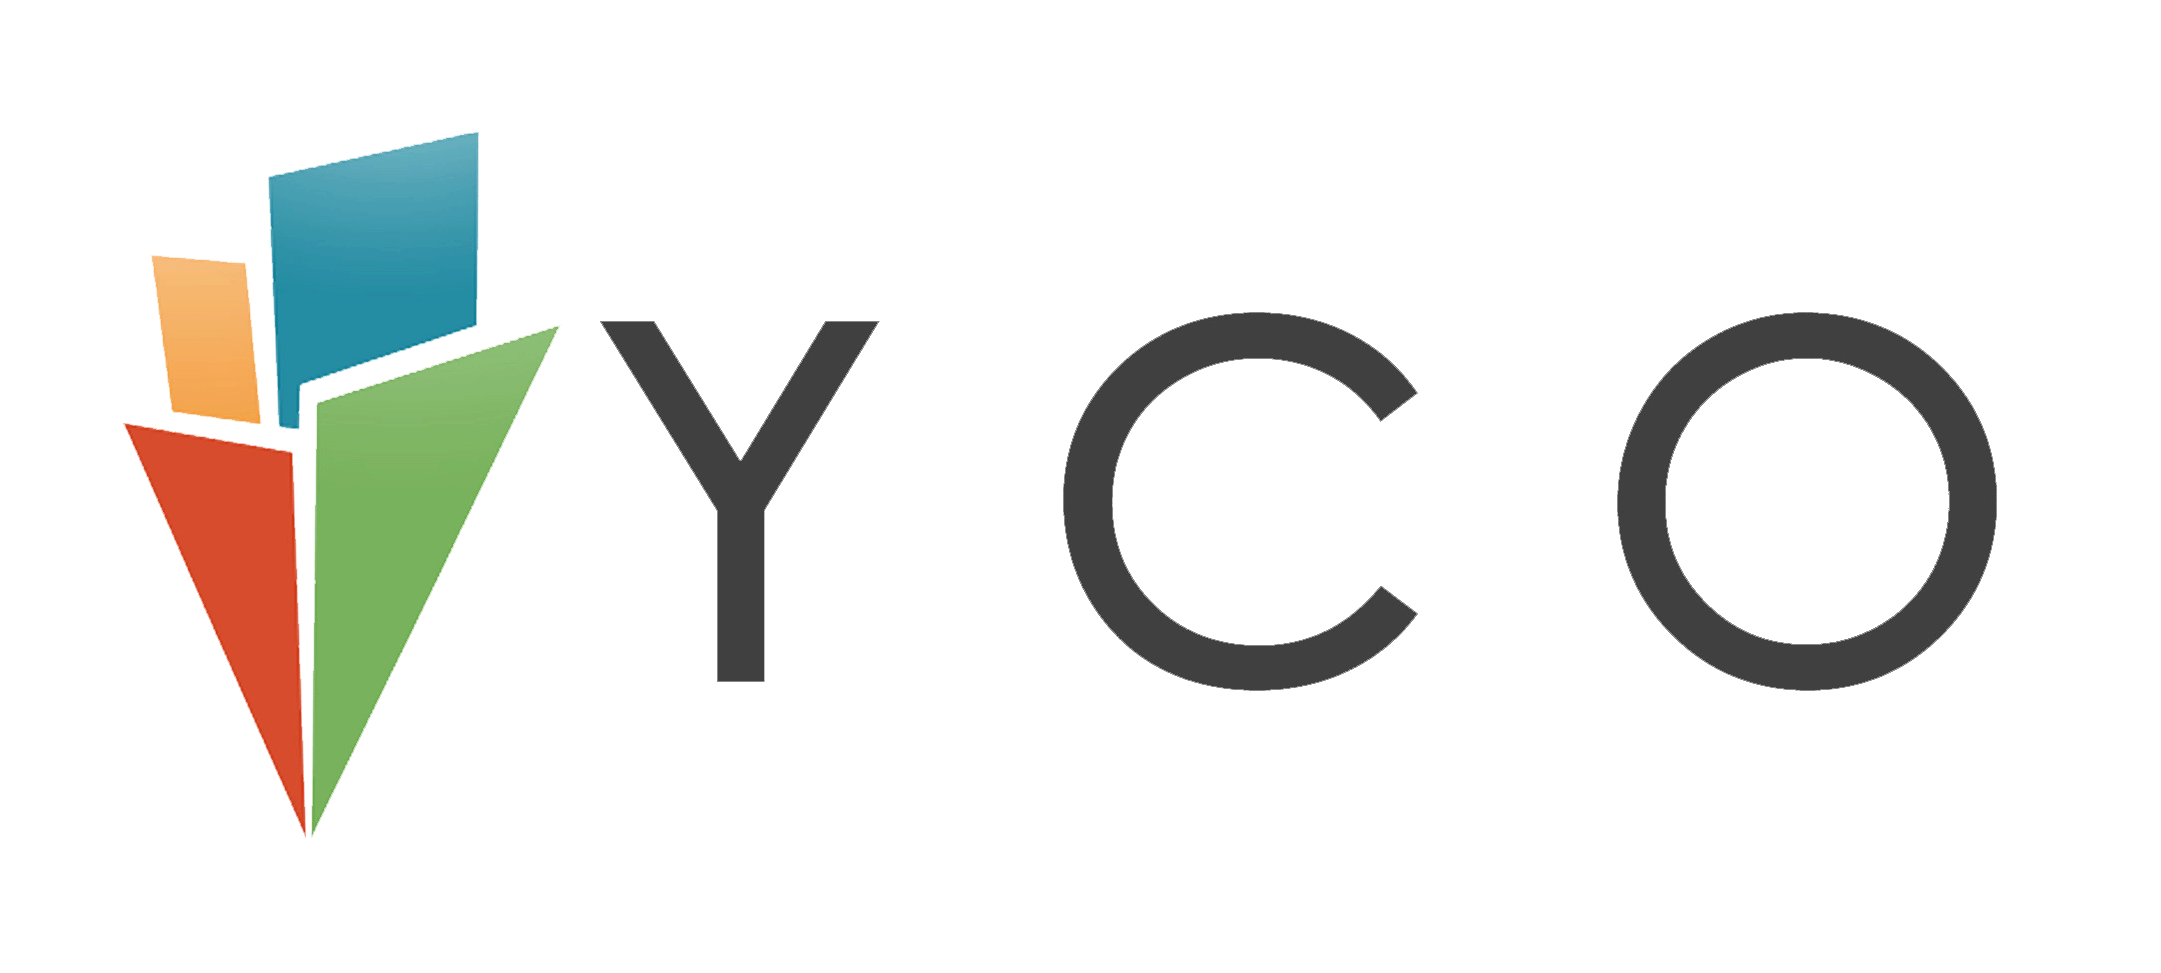 yco-1